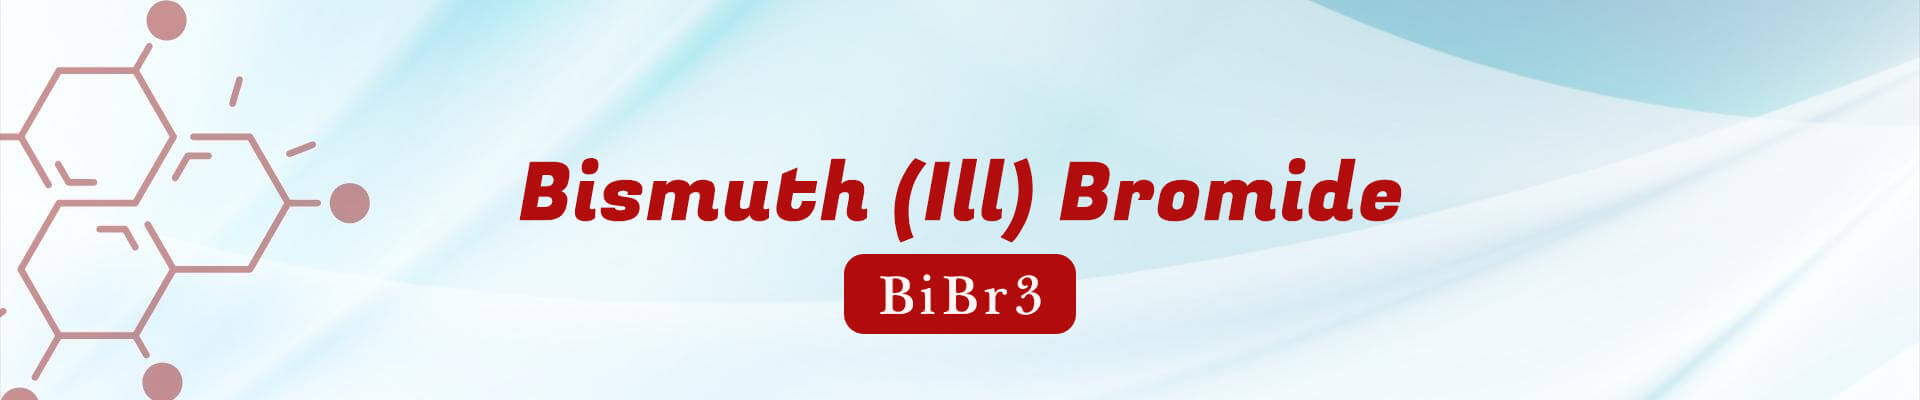 Bismuth (III) Bromide